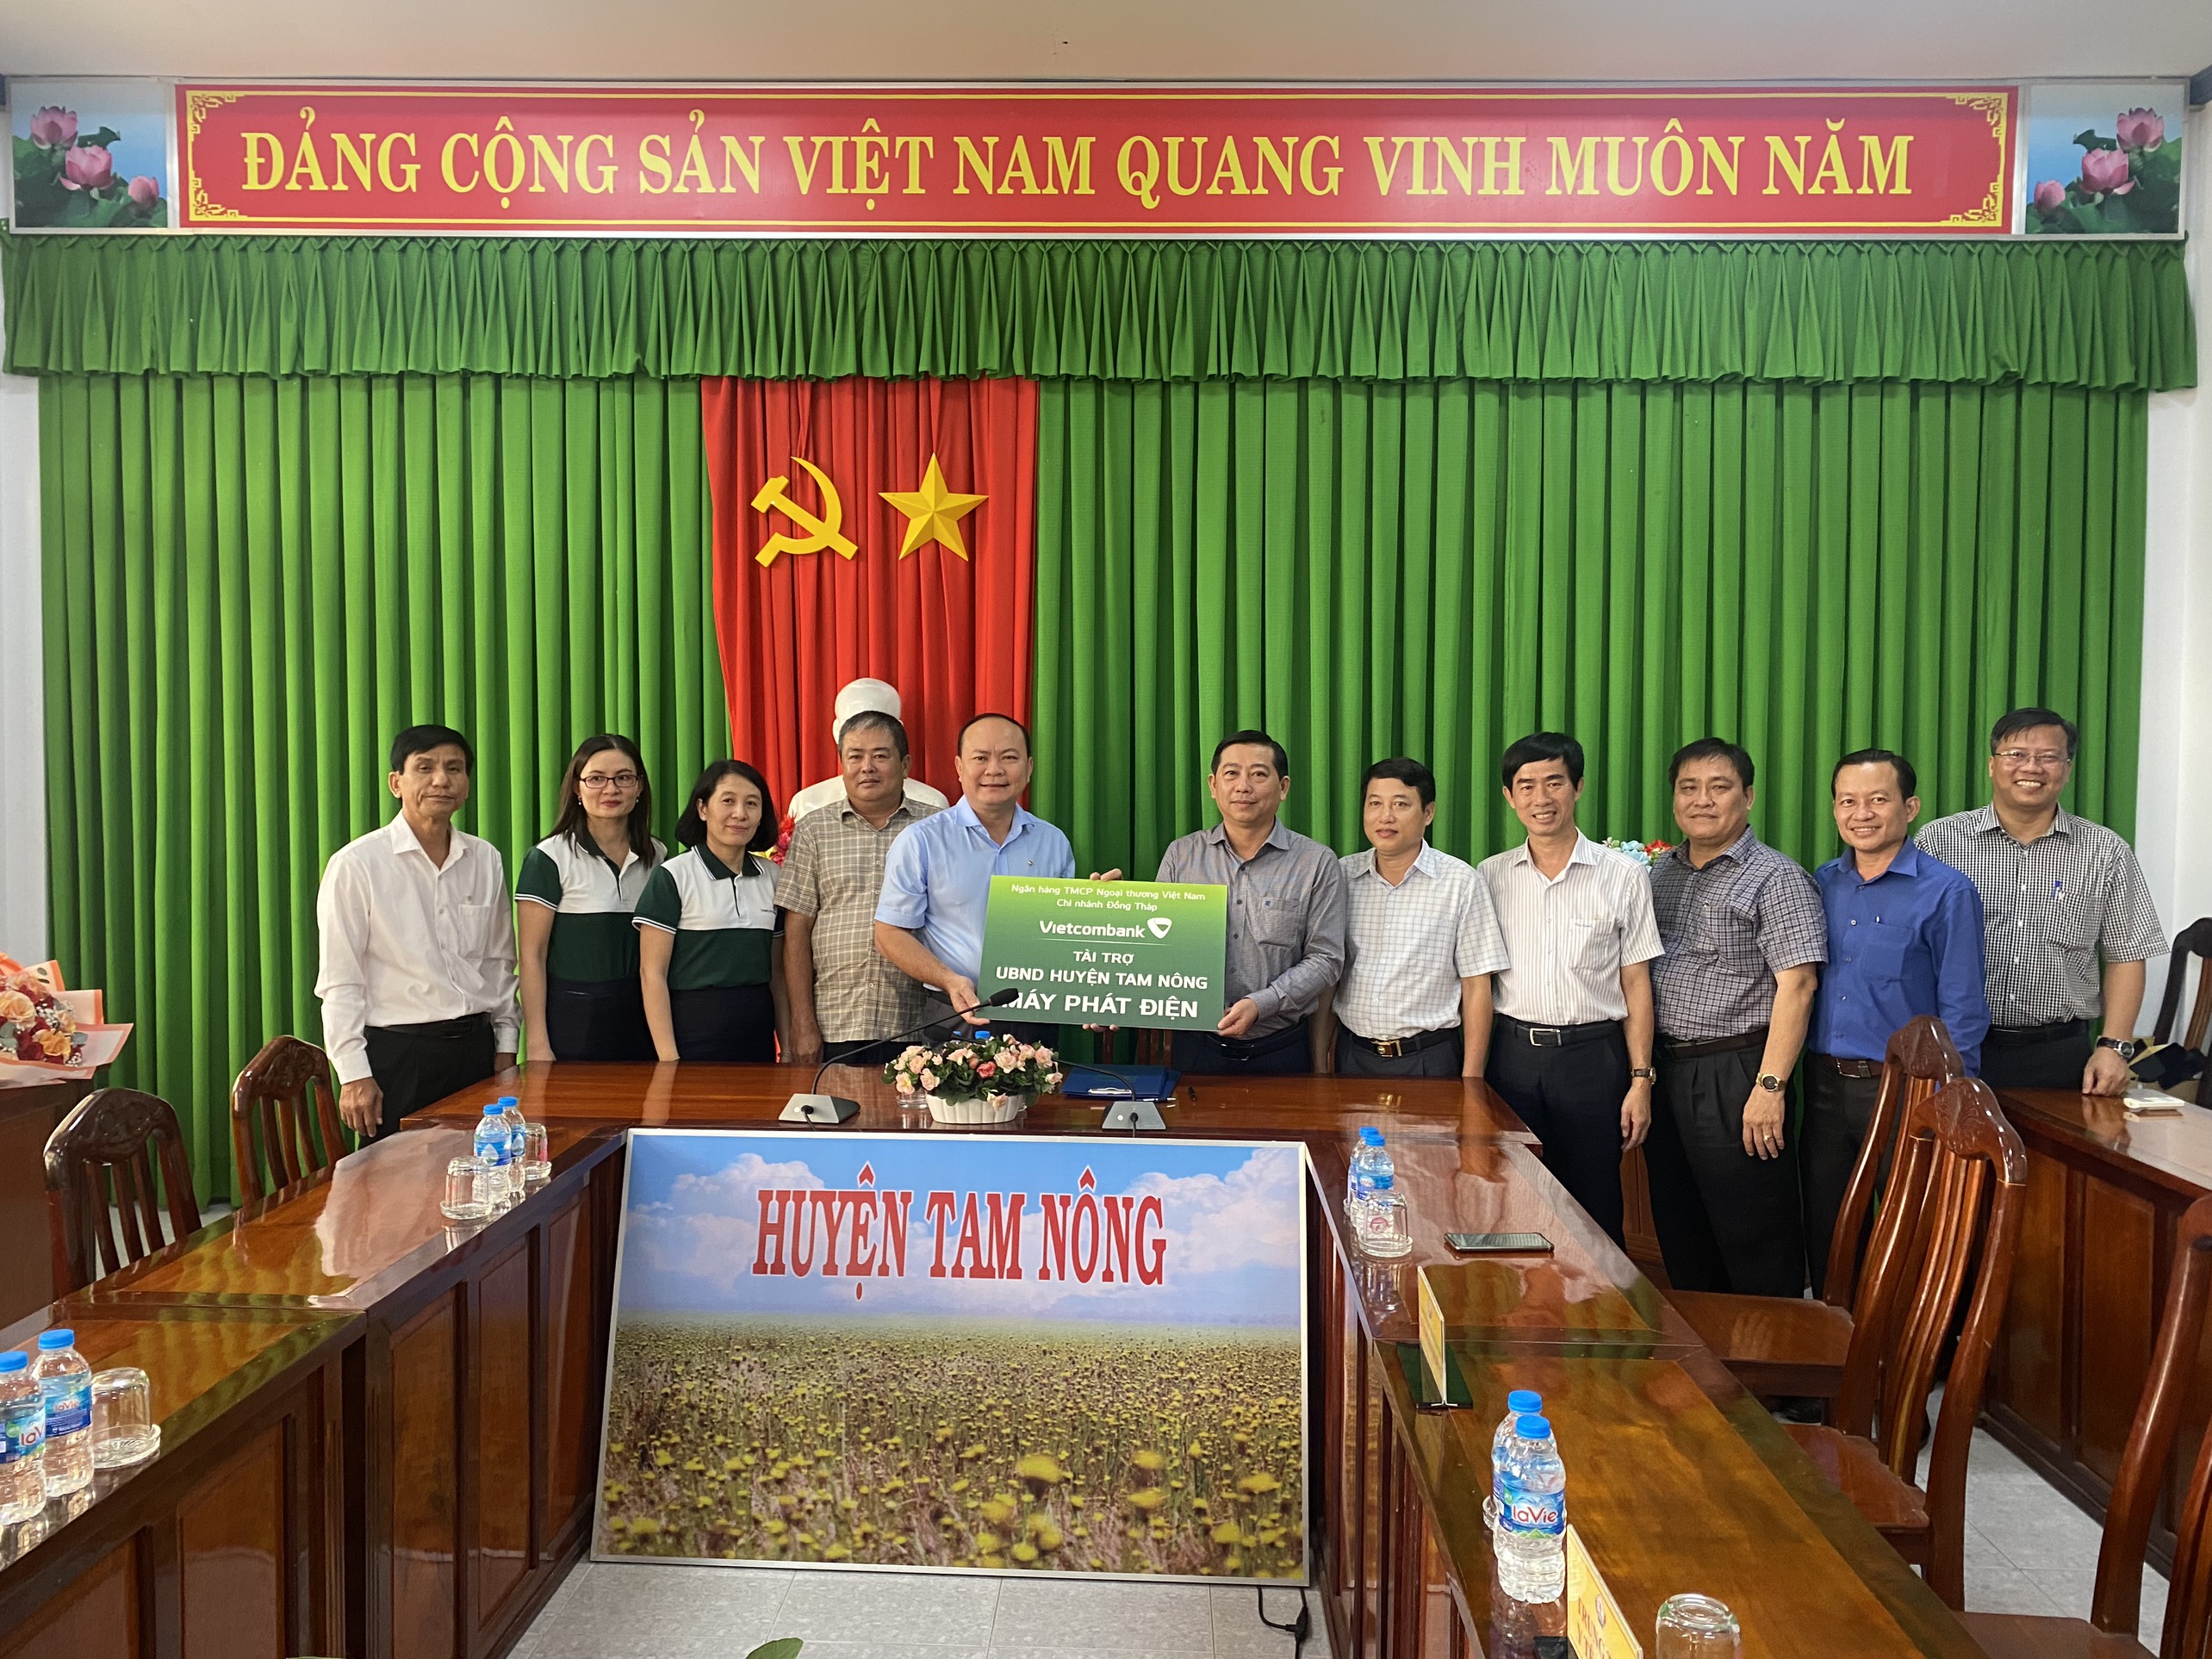 Vietcombank Đồng Tháp trao tặng máy phát điện cho UBND huyện Tam Nông